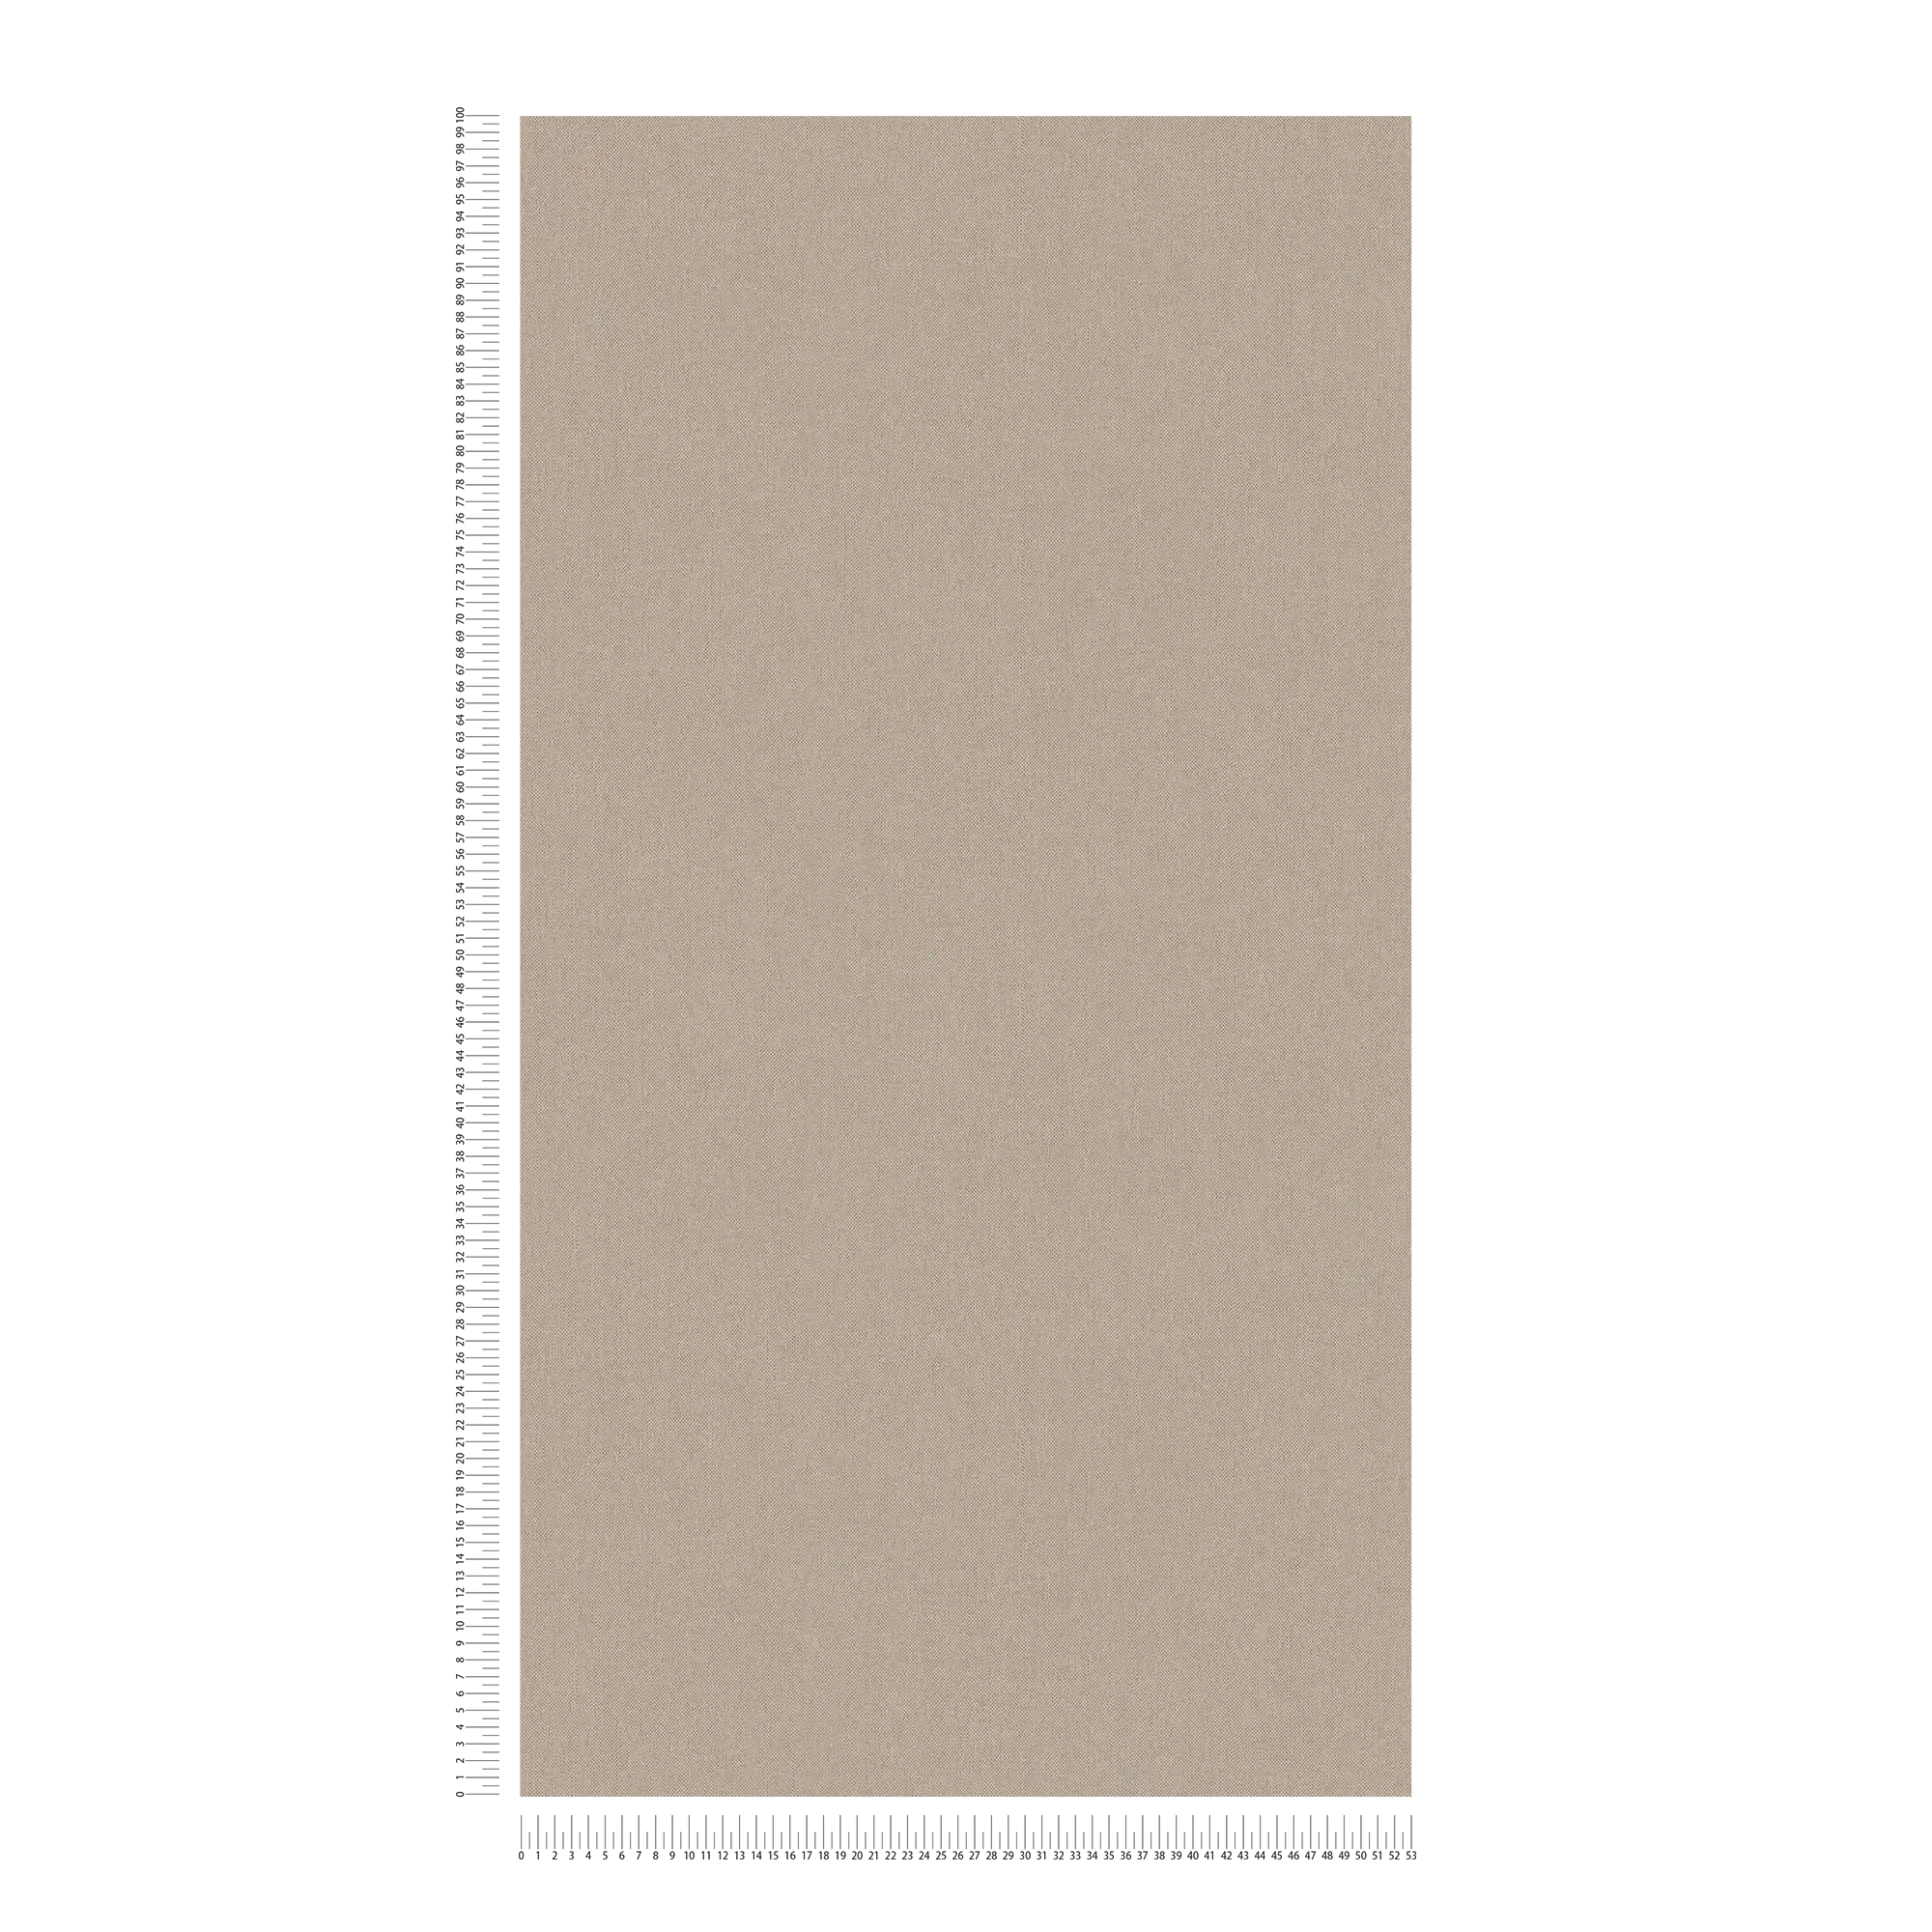             Papier peint intissé beige uni & mat à structure textile - beige, marron
        